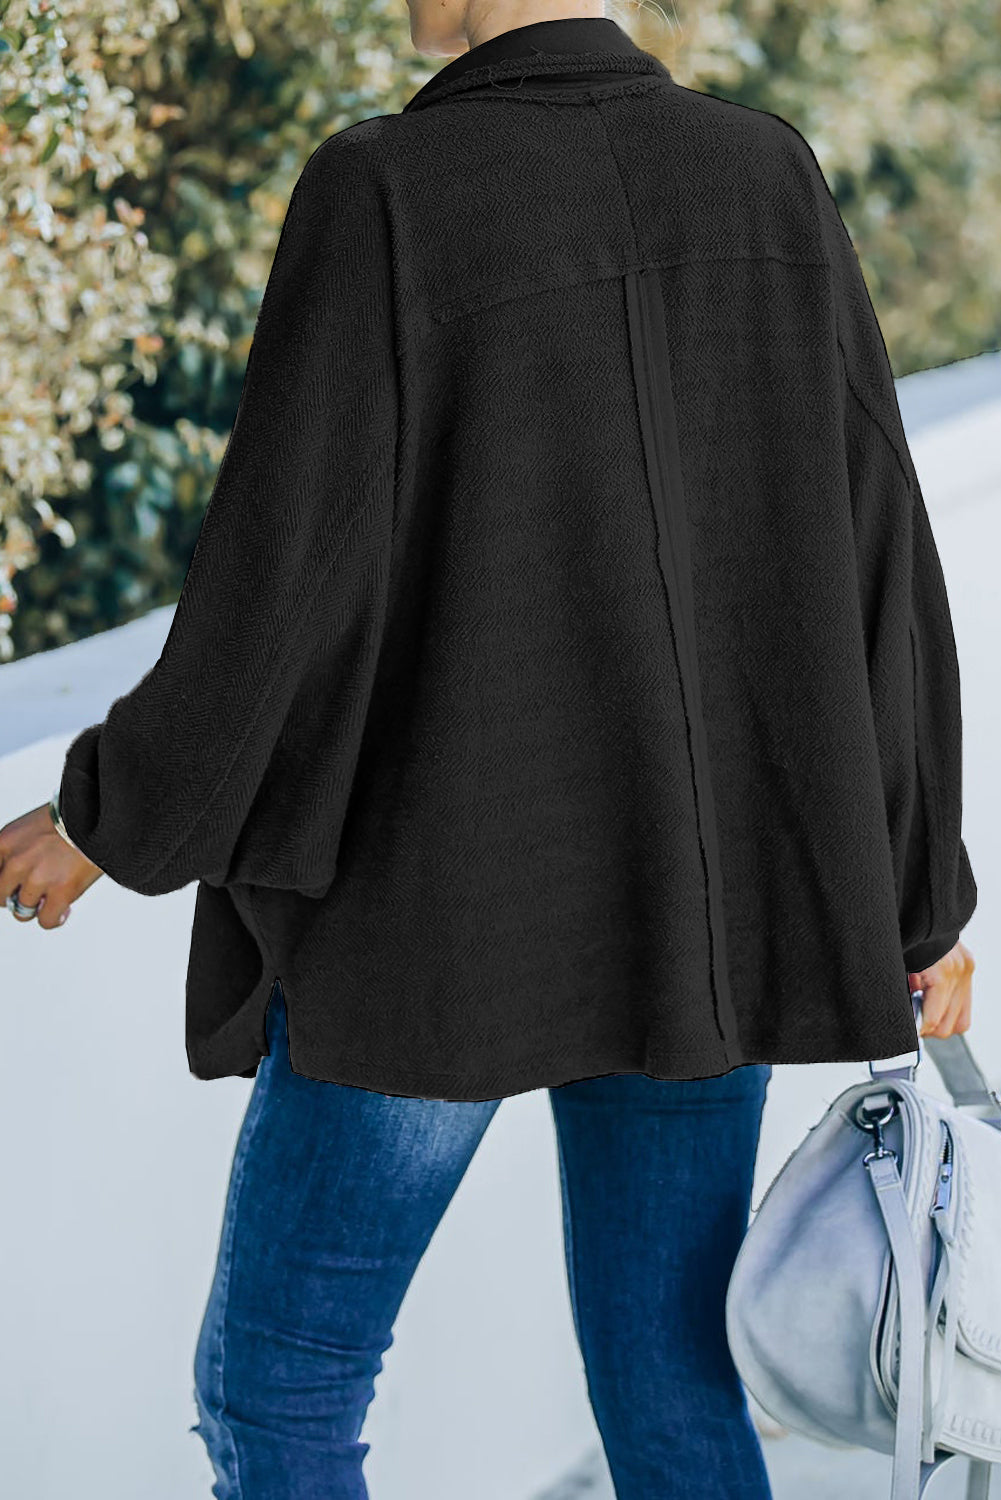 Crnkastozelena majica s dugim rukavima i džepovima na preklop veće veličine